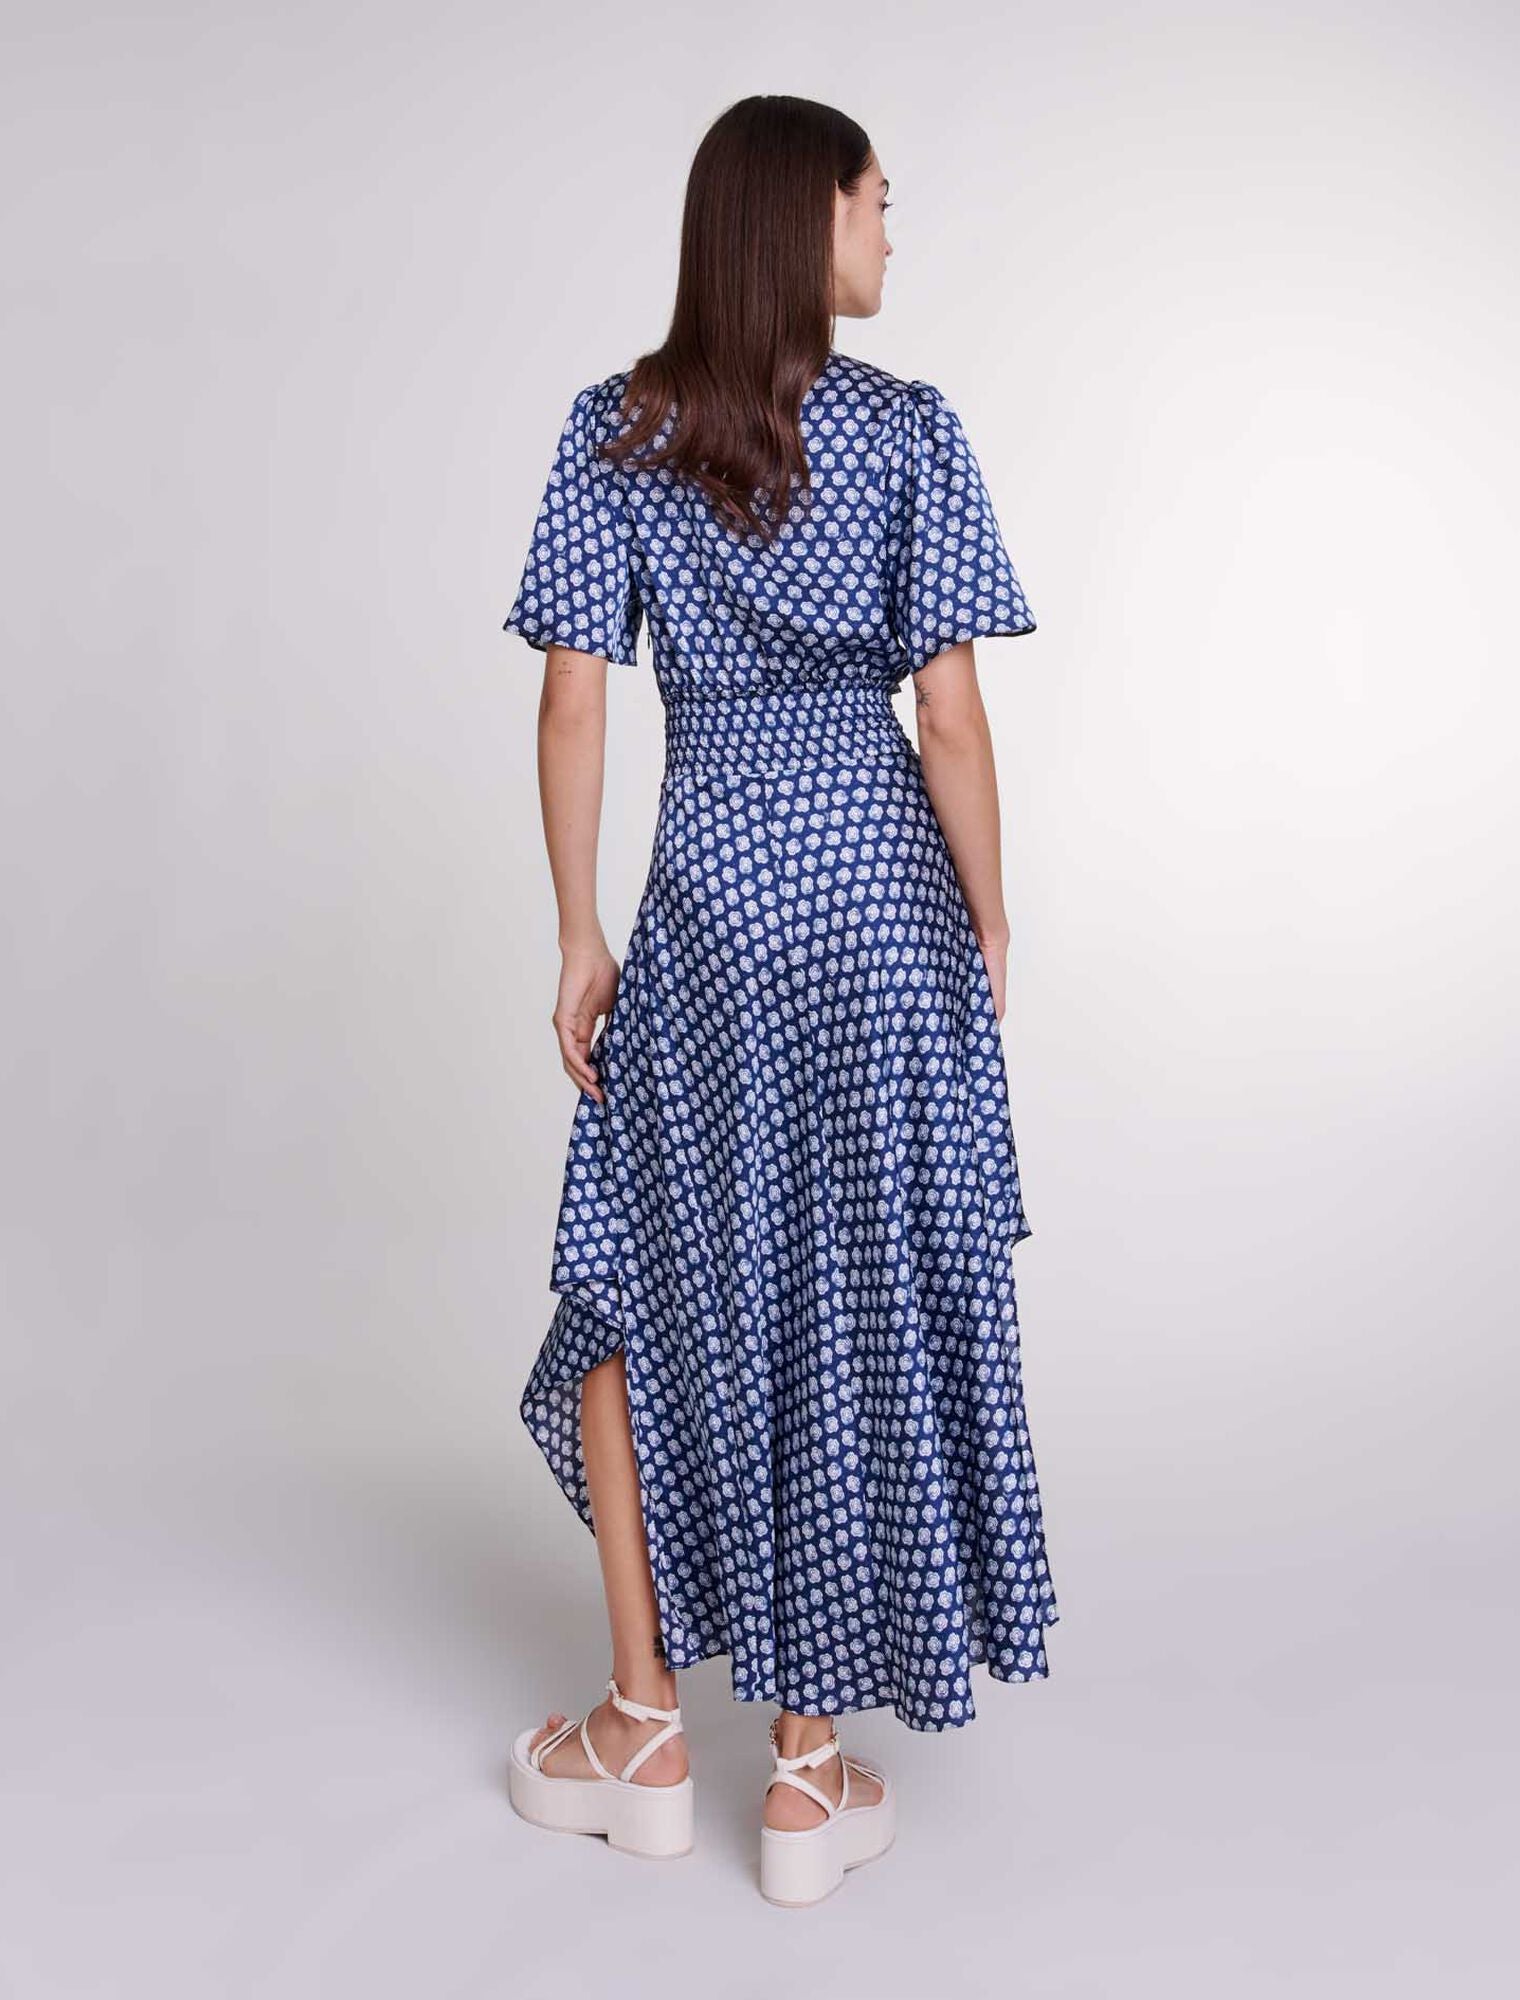 Clover Navy/Ecru Patterned maxi dress